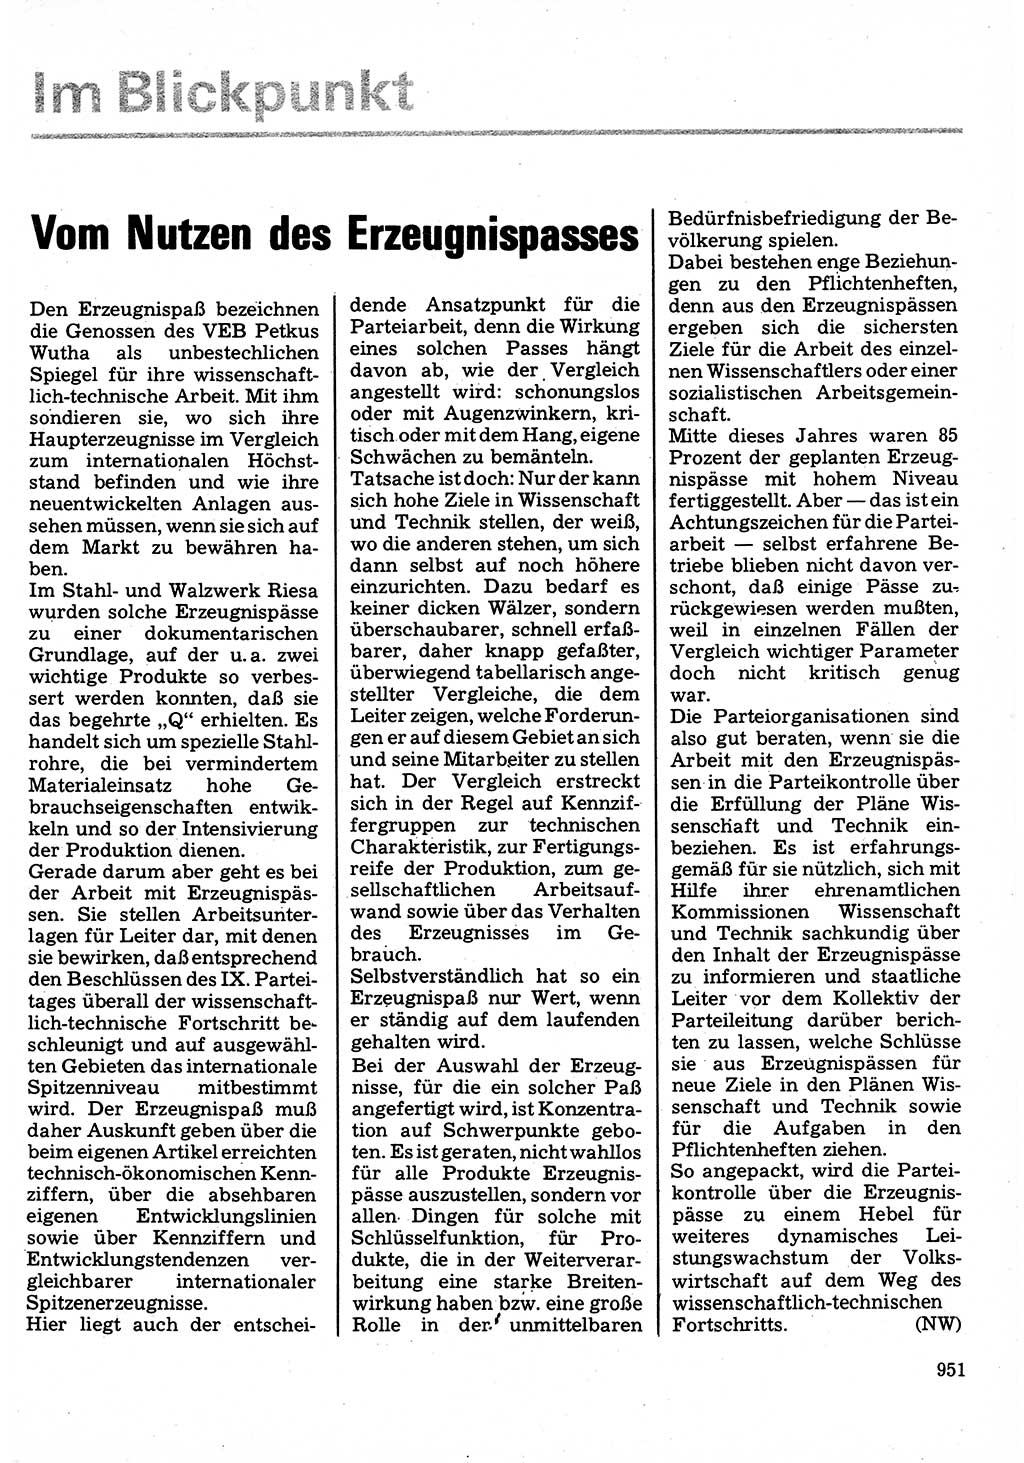 Neuer Weg (NW), Organ des Zentralkomitees (ZK) der SED (Sozialistische Einheitspartei Deutschlands) für Fragen des Parteilebens, 32. Jahrgang [Deutsche Demokratische Republik (DDR)] 1977, Seite 951 (NW ZK SED DDR 1977, S. 951)